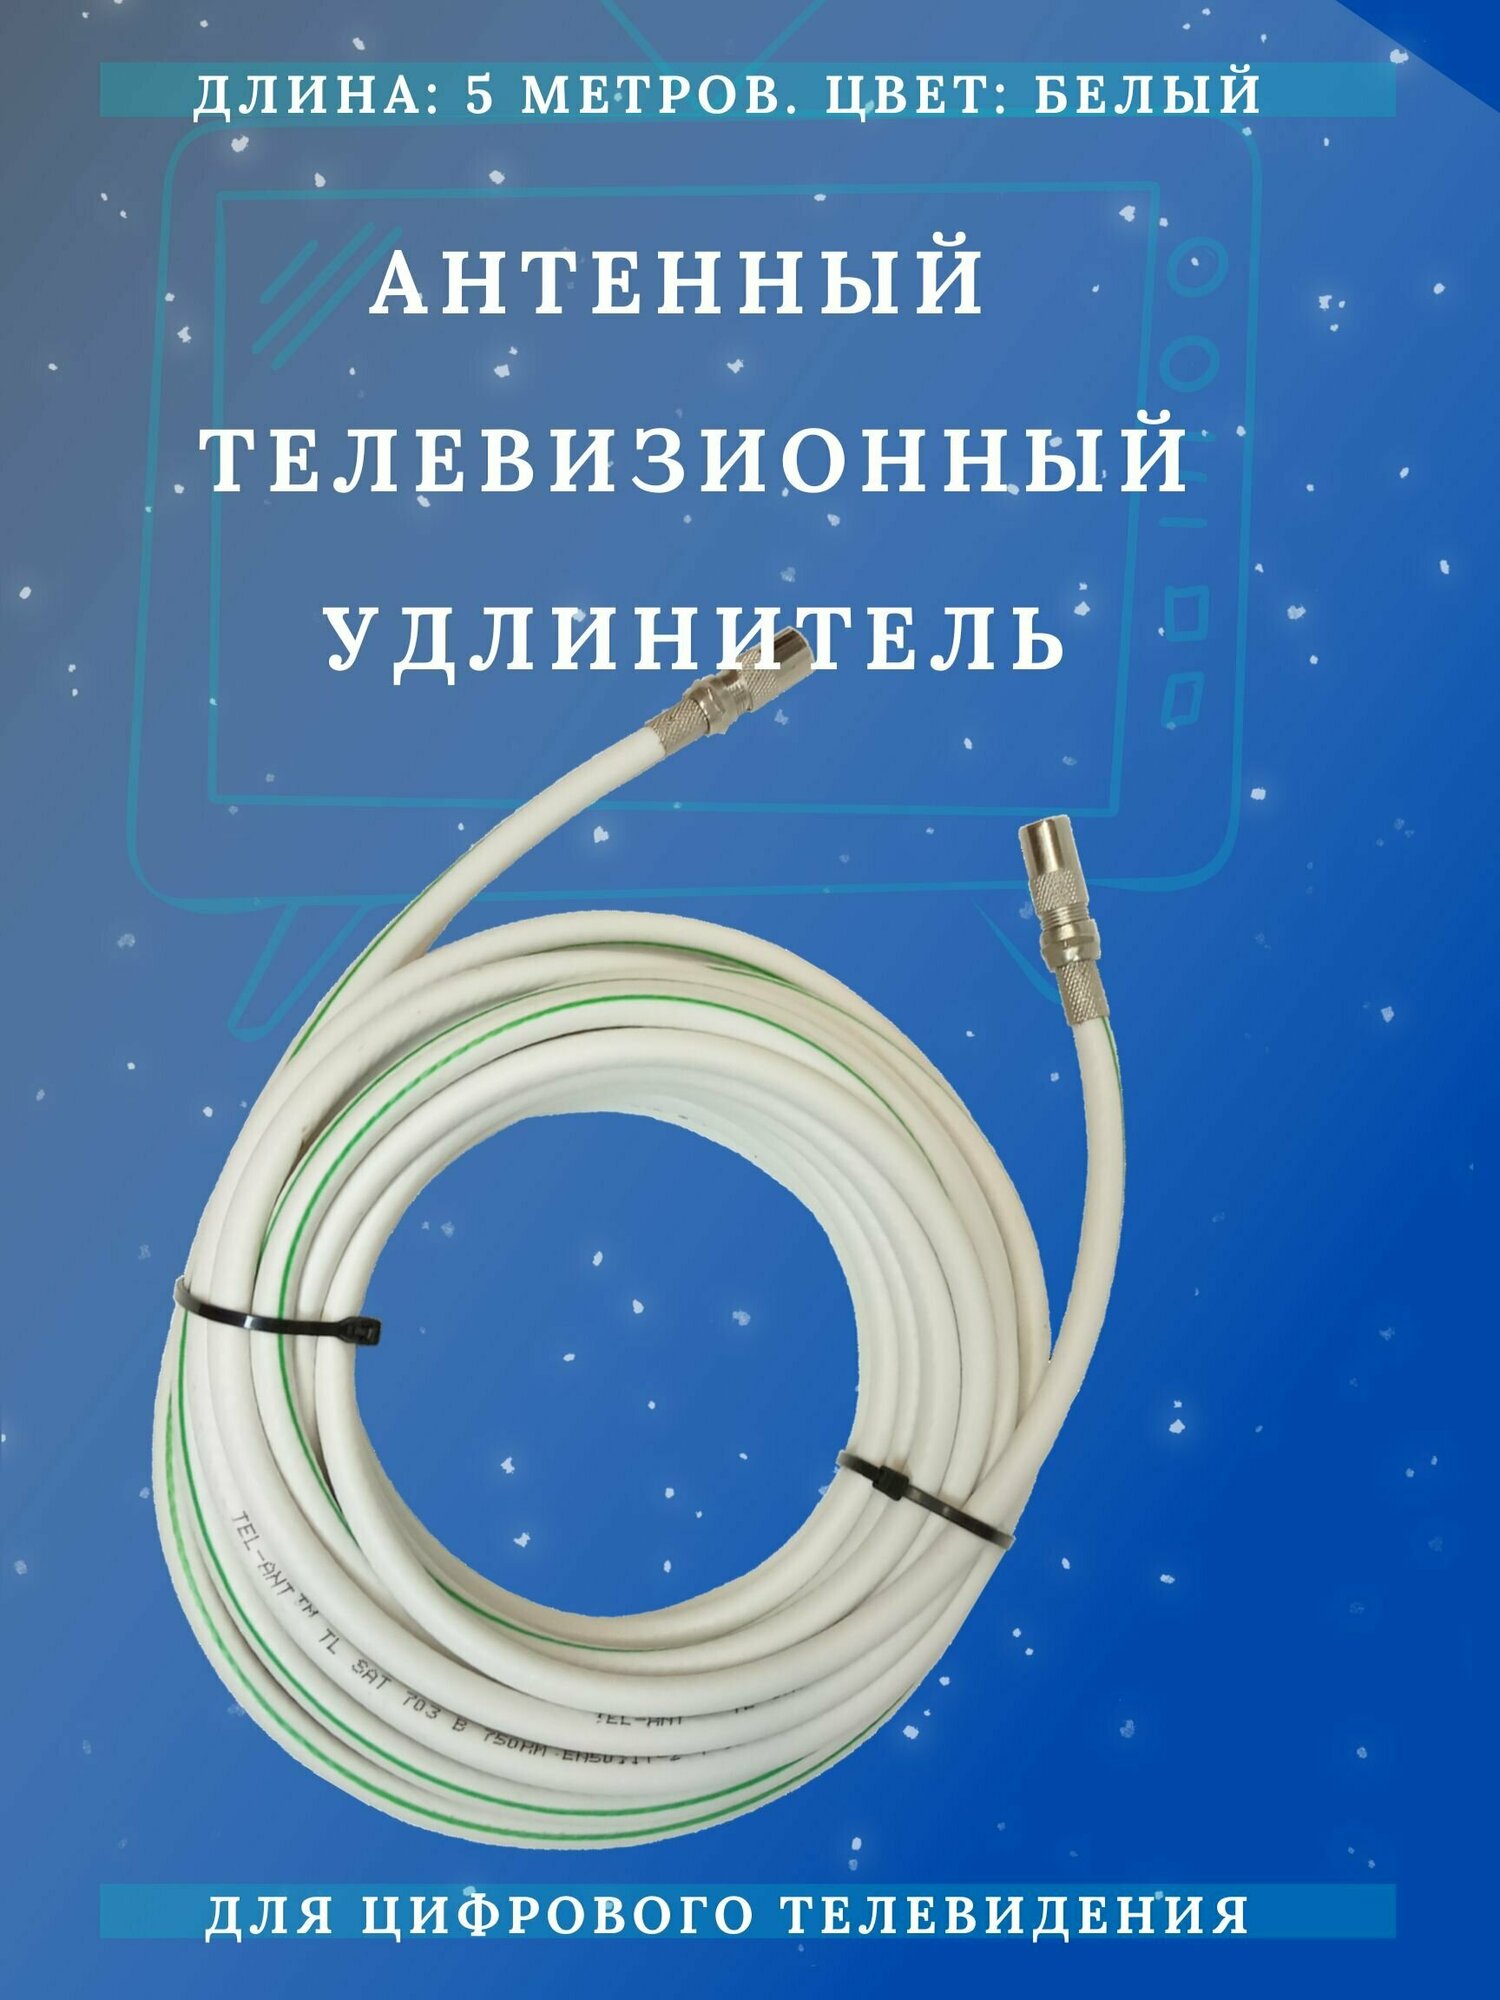 Антенный кабель телевизионный (удлинитель) ТАУ-5 метров Триада LUX белый